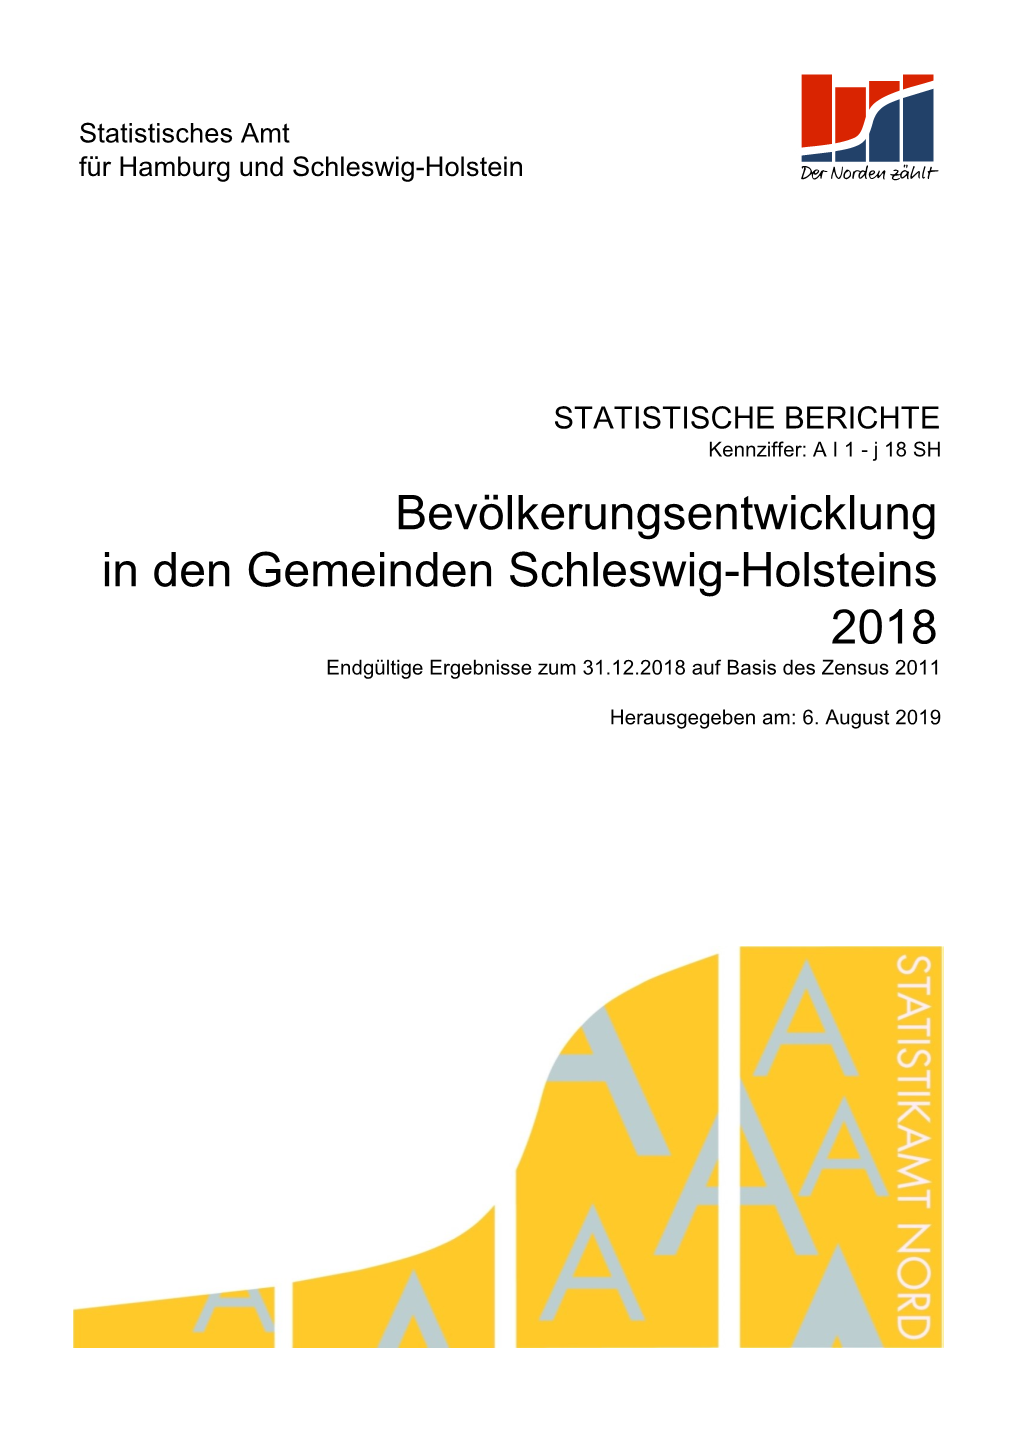 2018 Bevölkerungsentwicklung in Den Gemeinden Schleswig-Holsteins